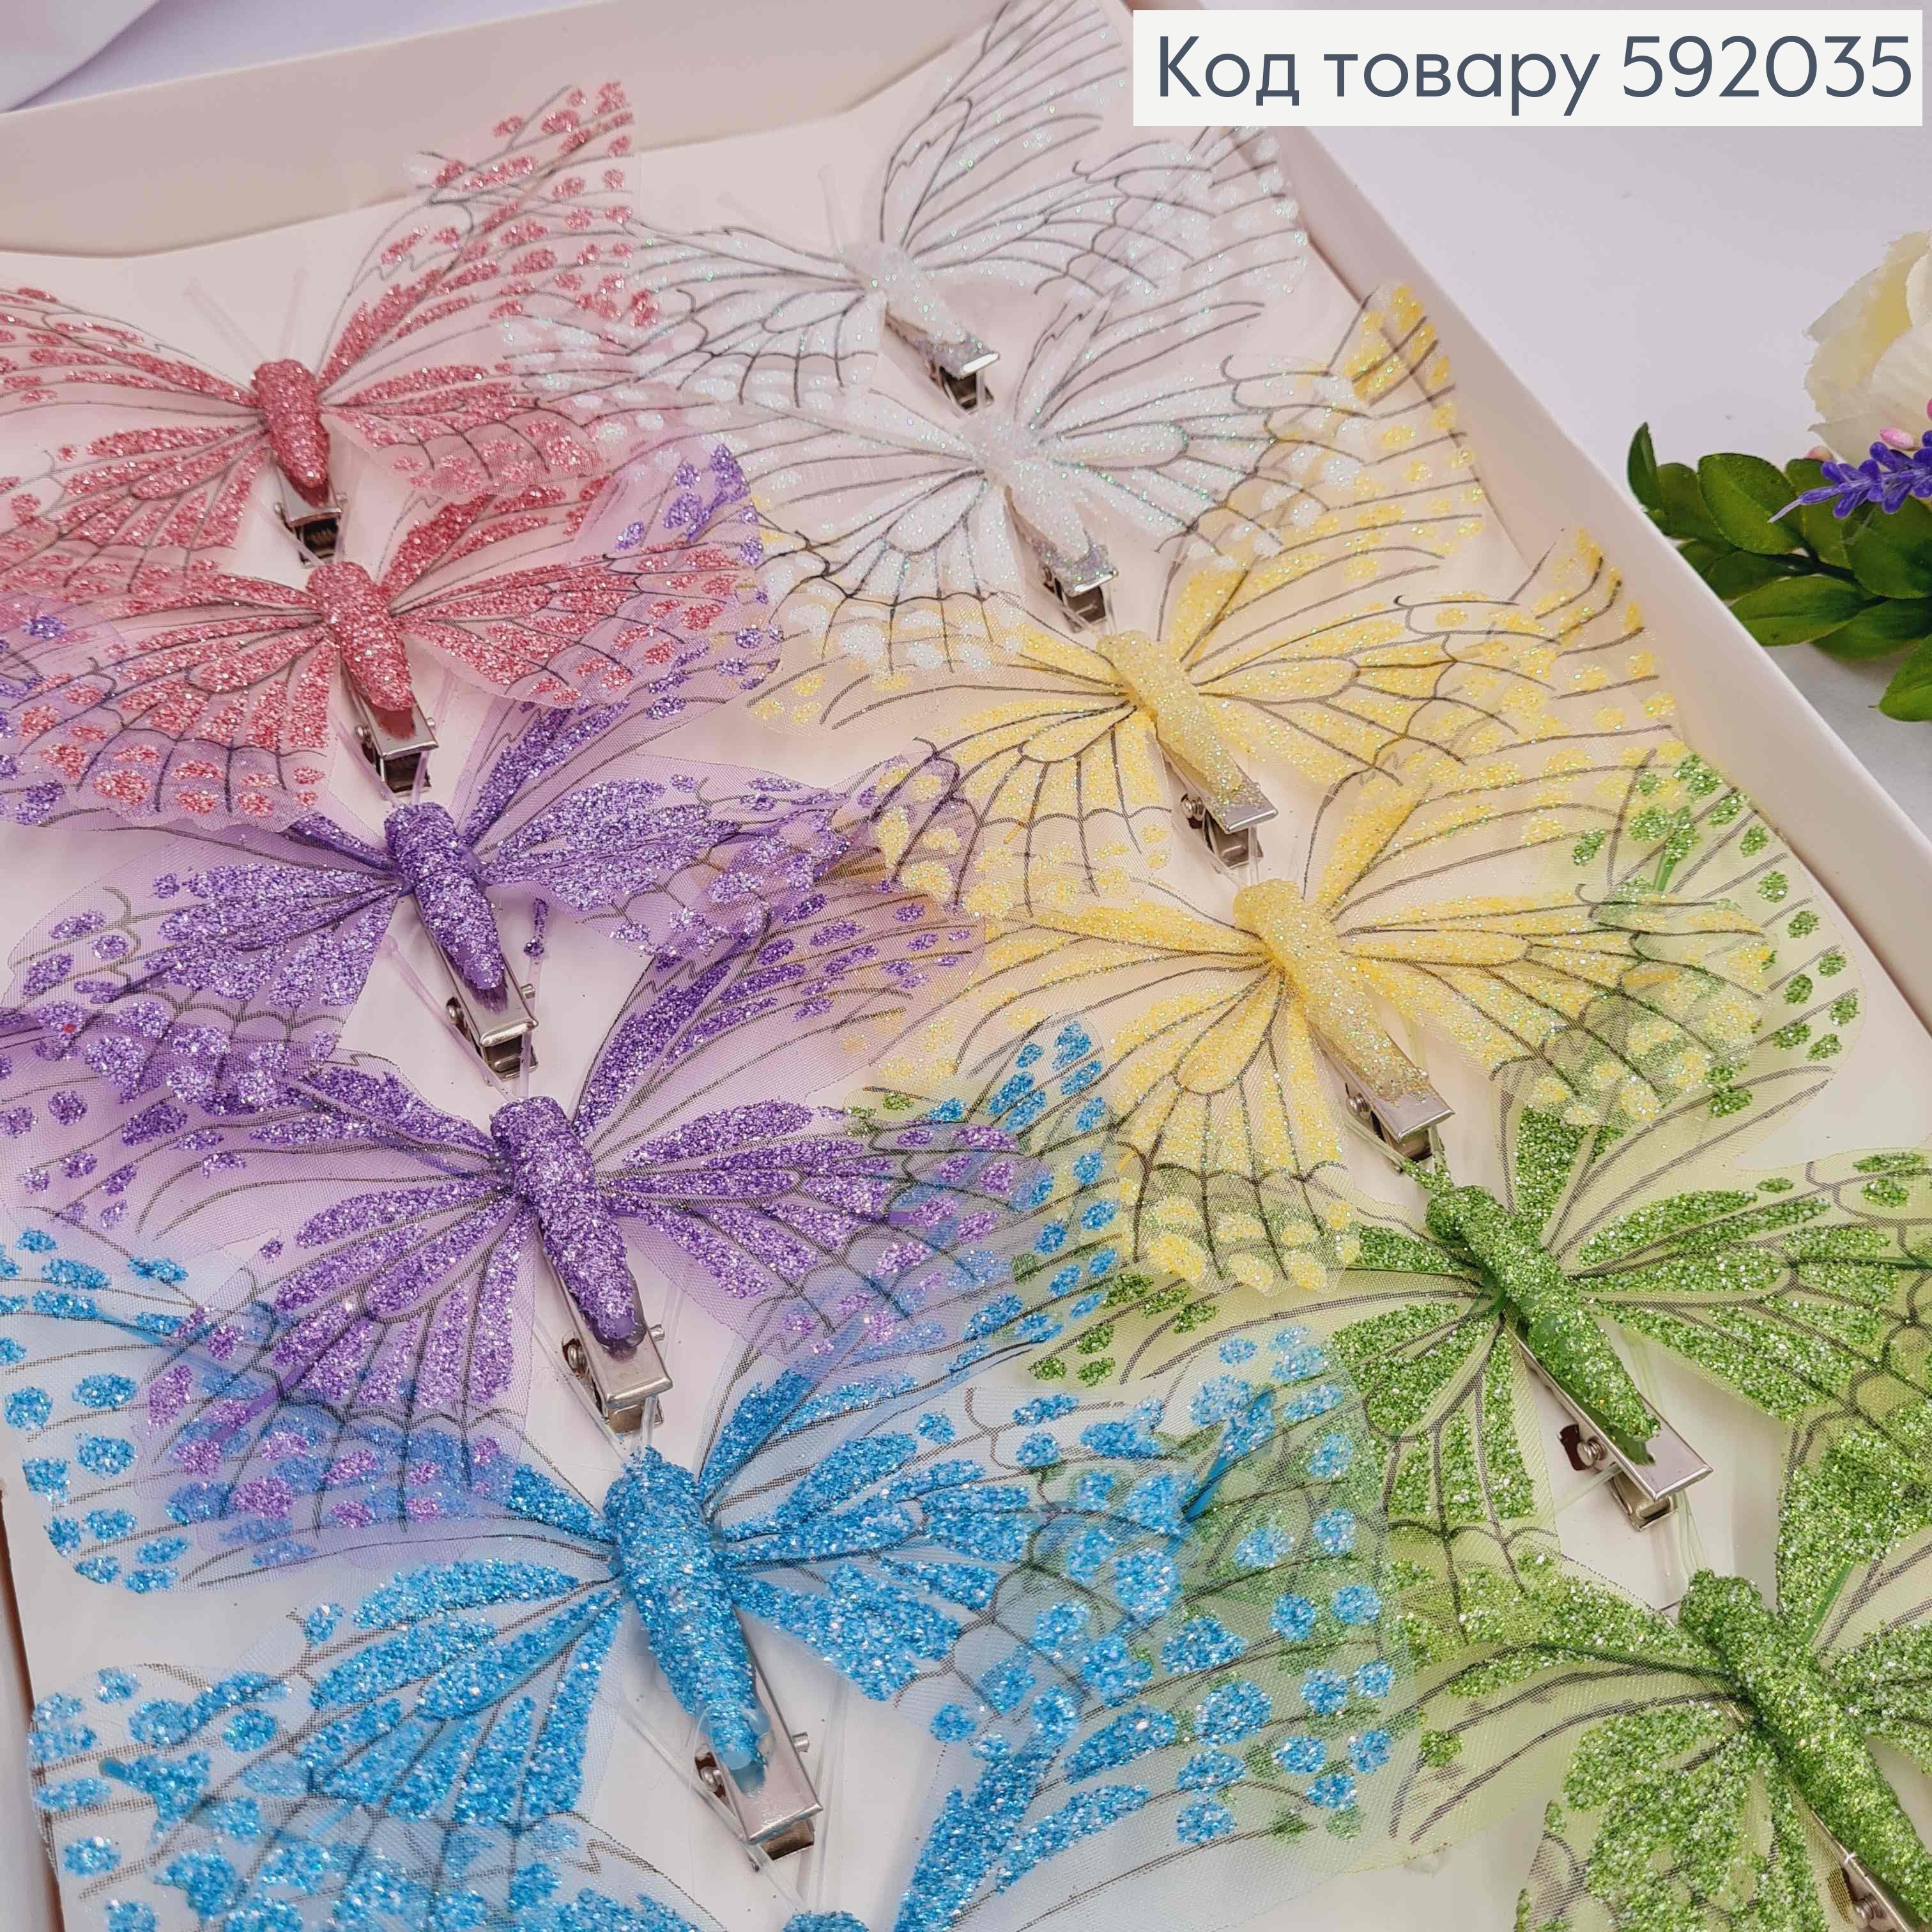 Флористическая заколка, Бабочка с блестками, 12см, в ассортименте 592035 фото 2